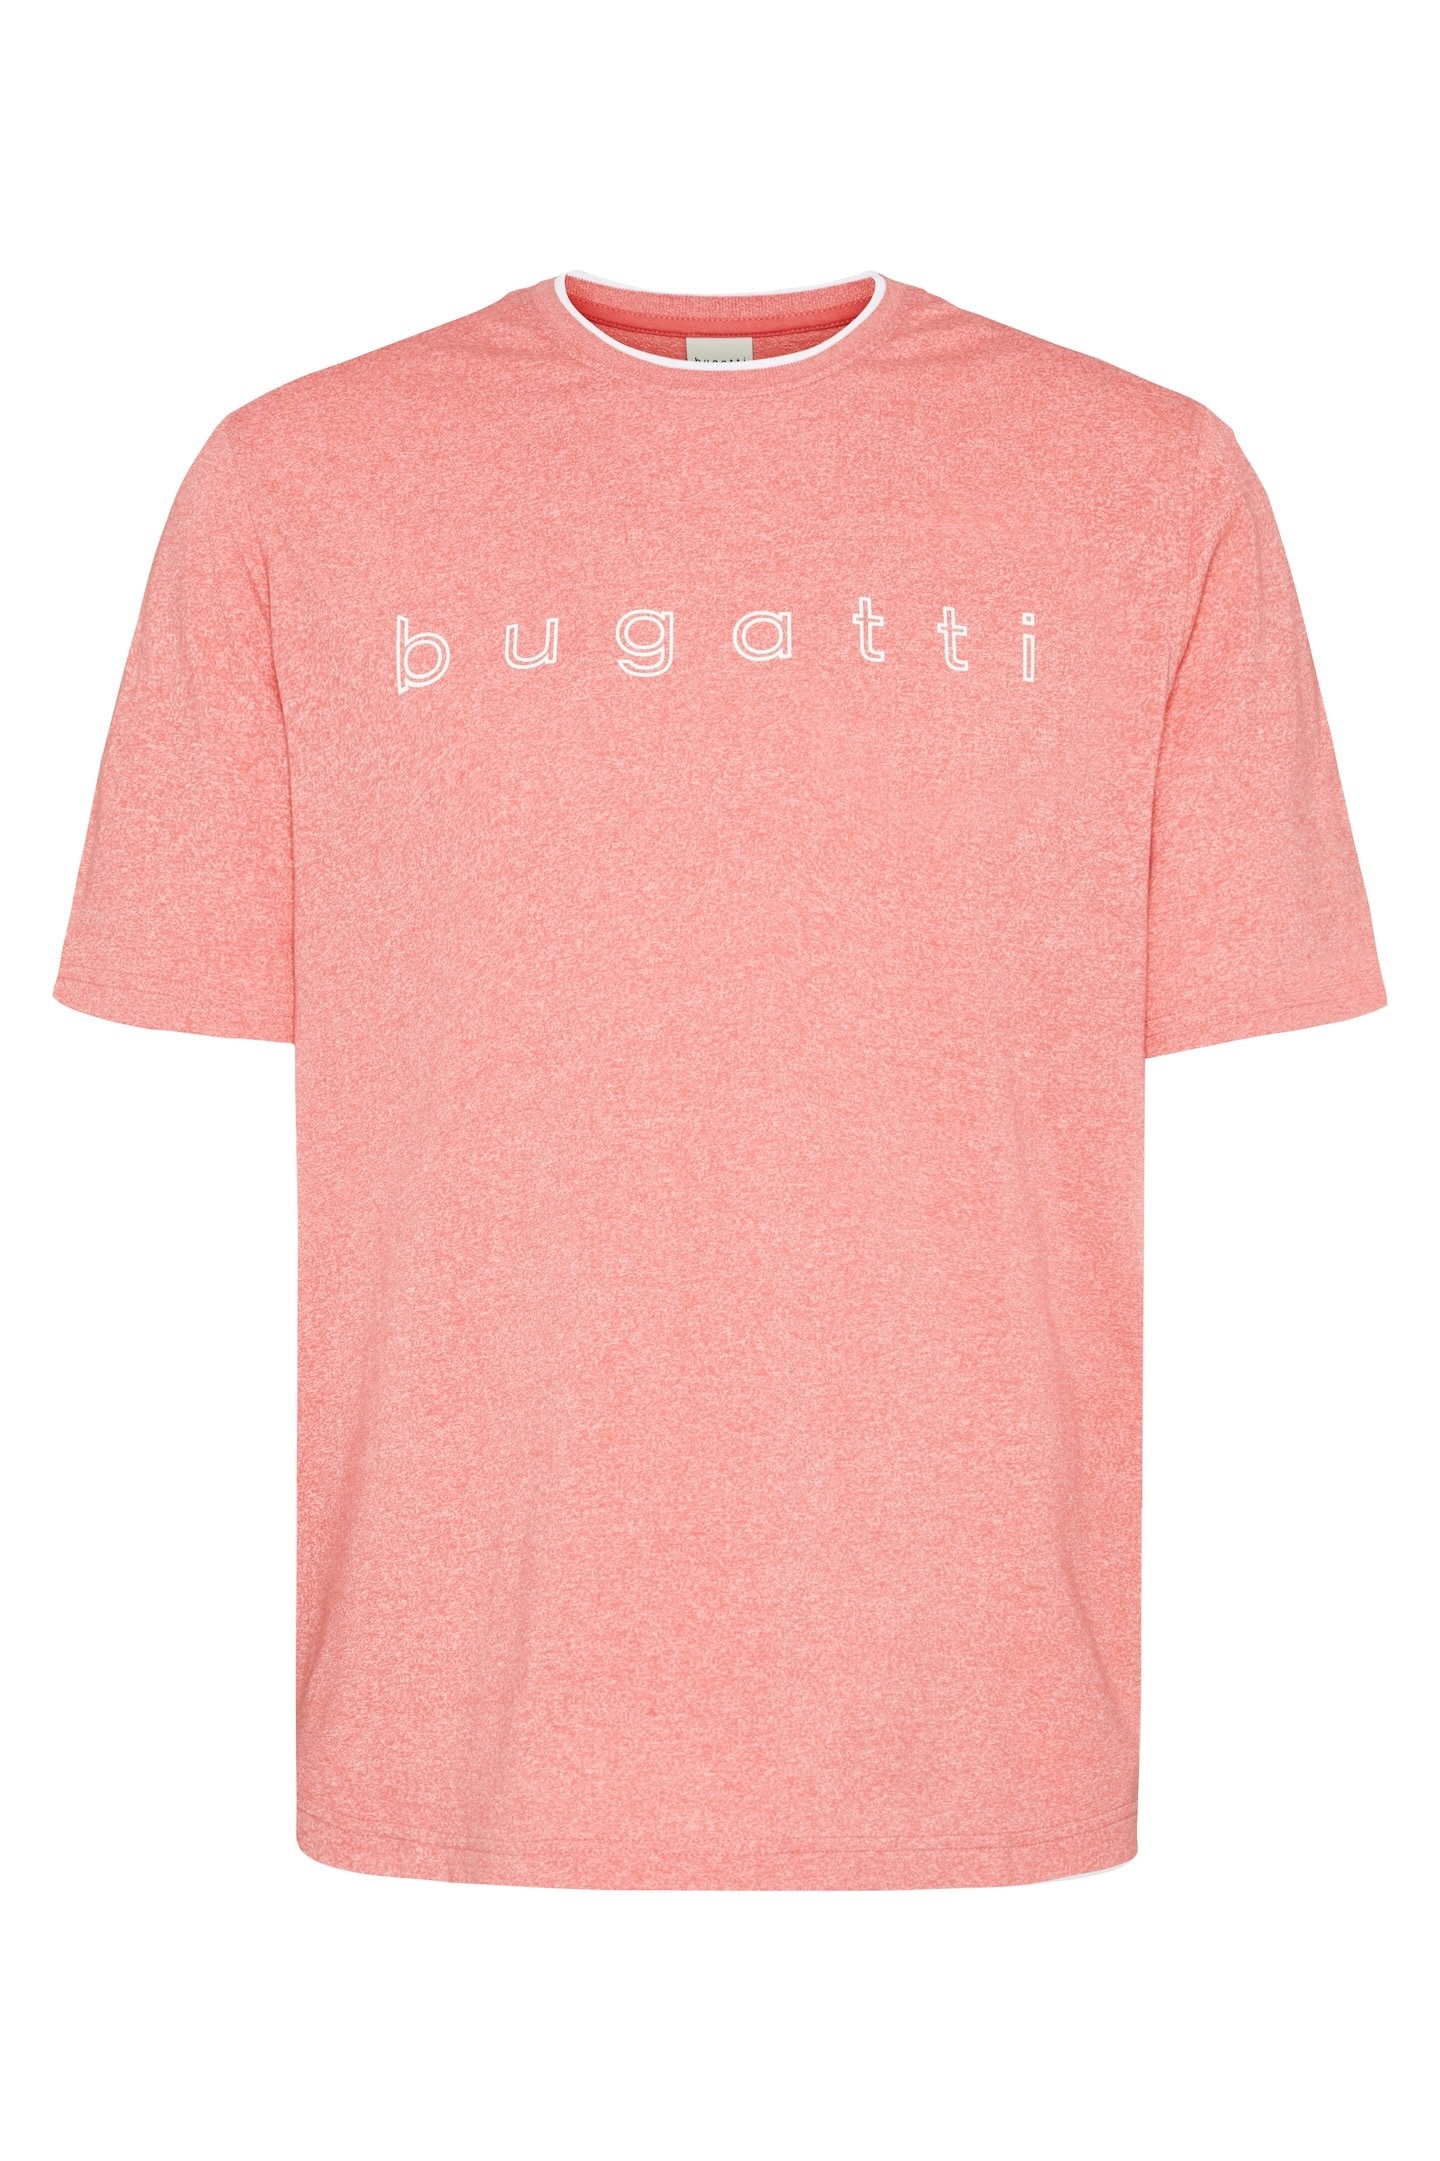 bugatti T-Shirt, mit modischen Kontraststreifen bei OTTO online bestellen am Kragen